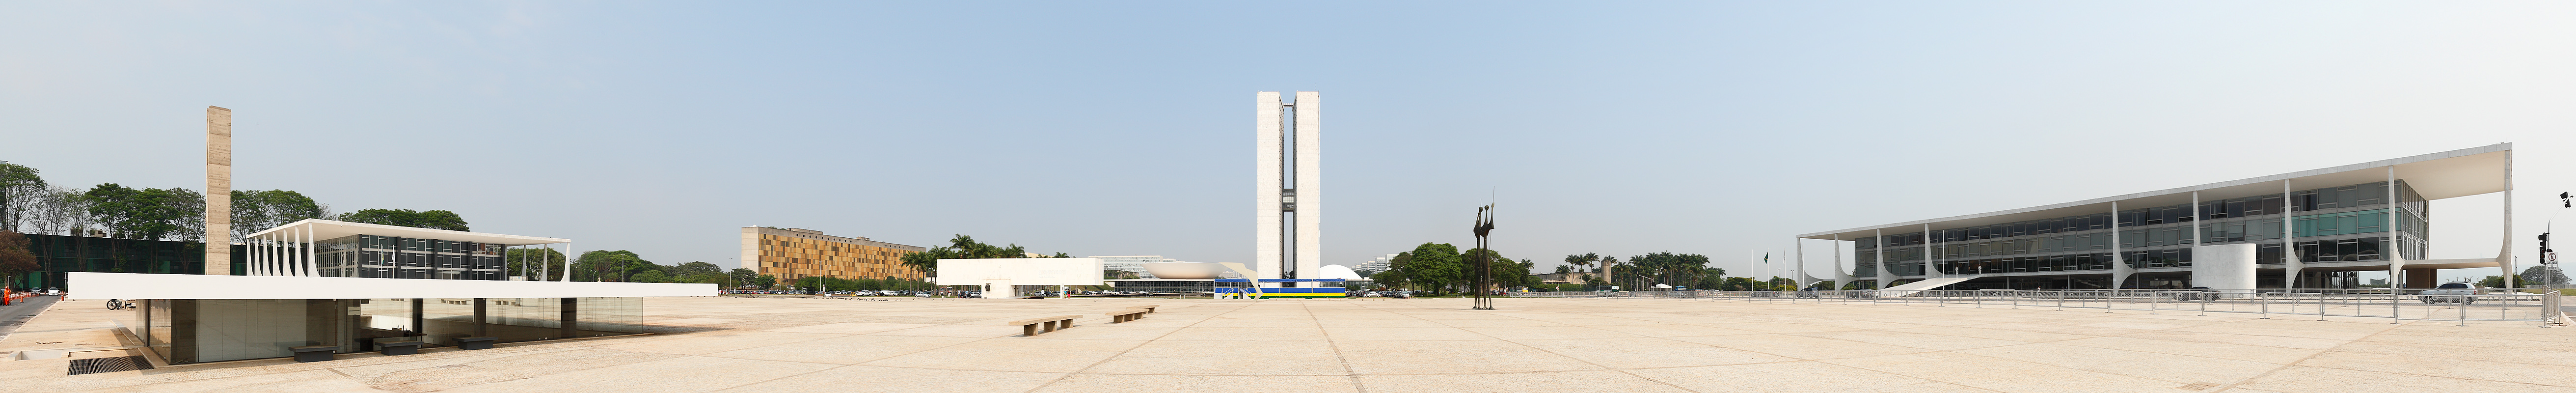 A Praça dos Três Poderes: à esquerda, o STF, ao centro o Congresso Nacional e à direita o Palácio do Planalto (Foto: Eric Gaba/Wikimedia)